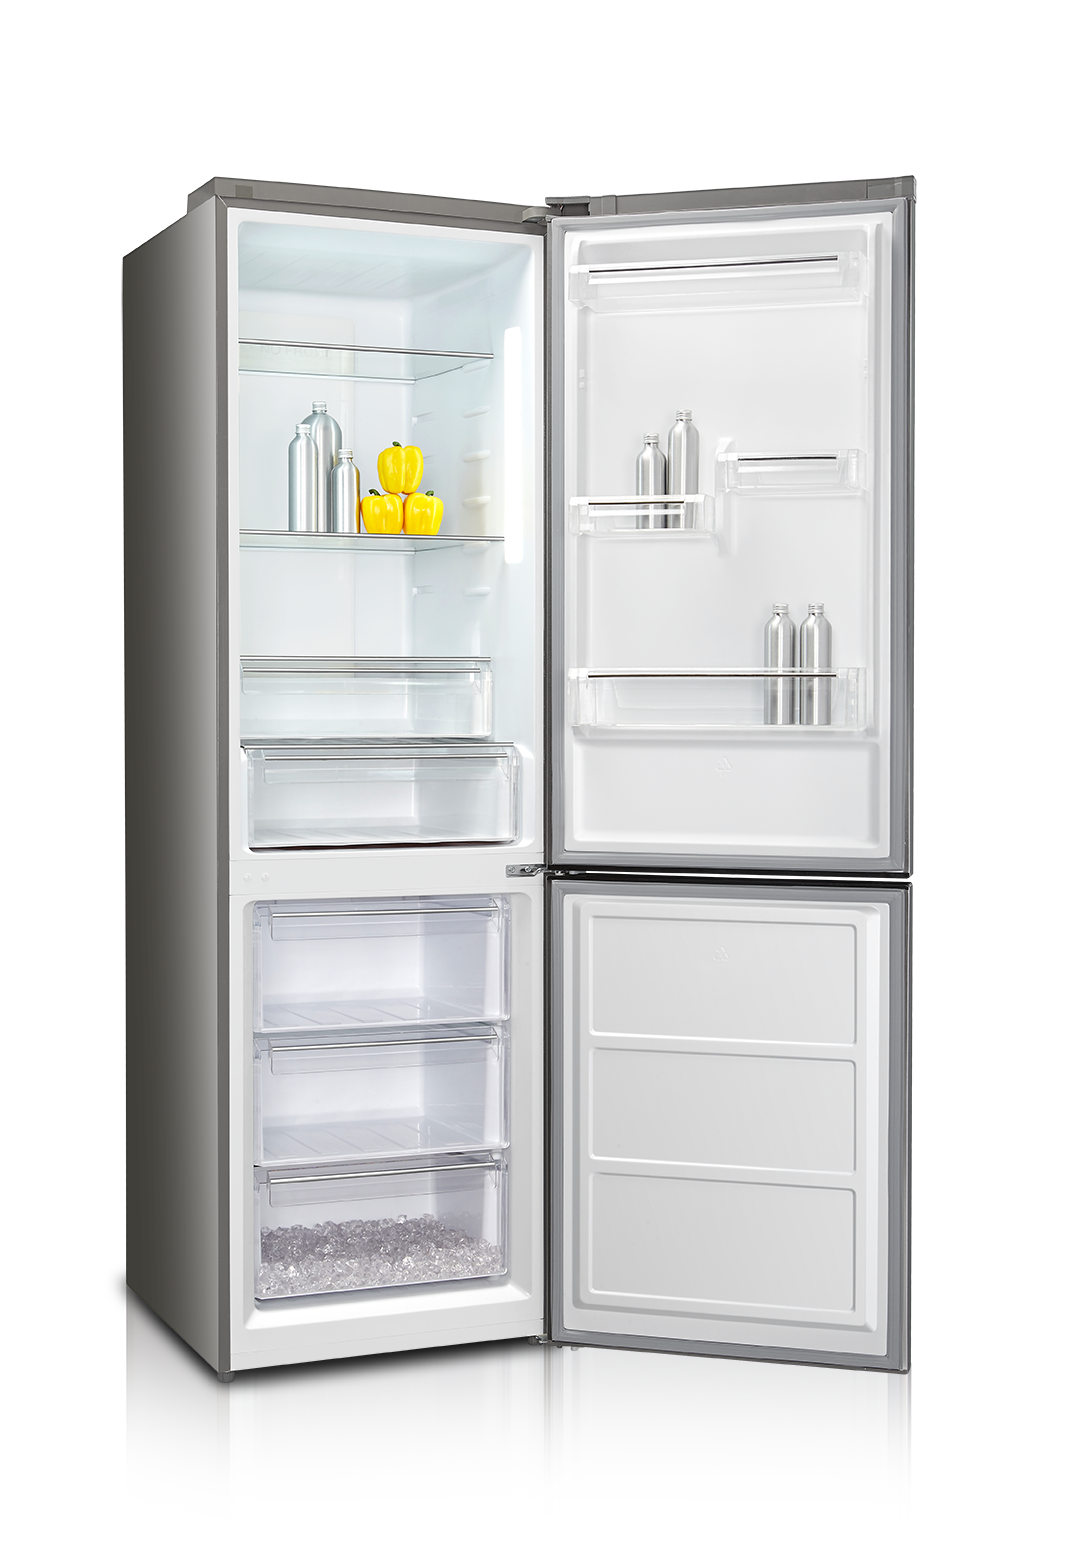 Купить холодильник дэу. Холодильник Daewoo rnv3310gchs. Холодильник дексп двухкамерный. Холодильник DEXP двухкамерный. Daewoo Electronics холодильник двухкамерный.